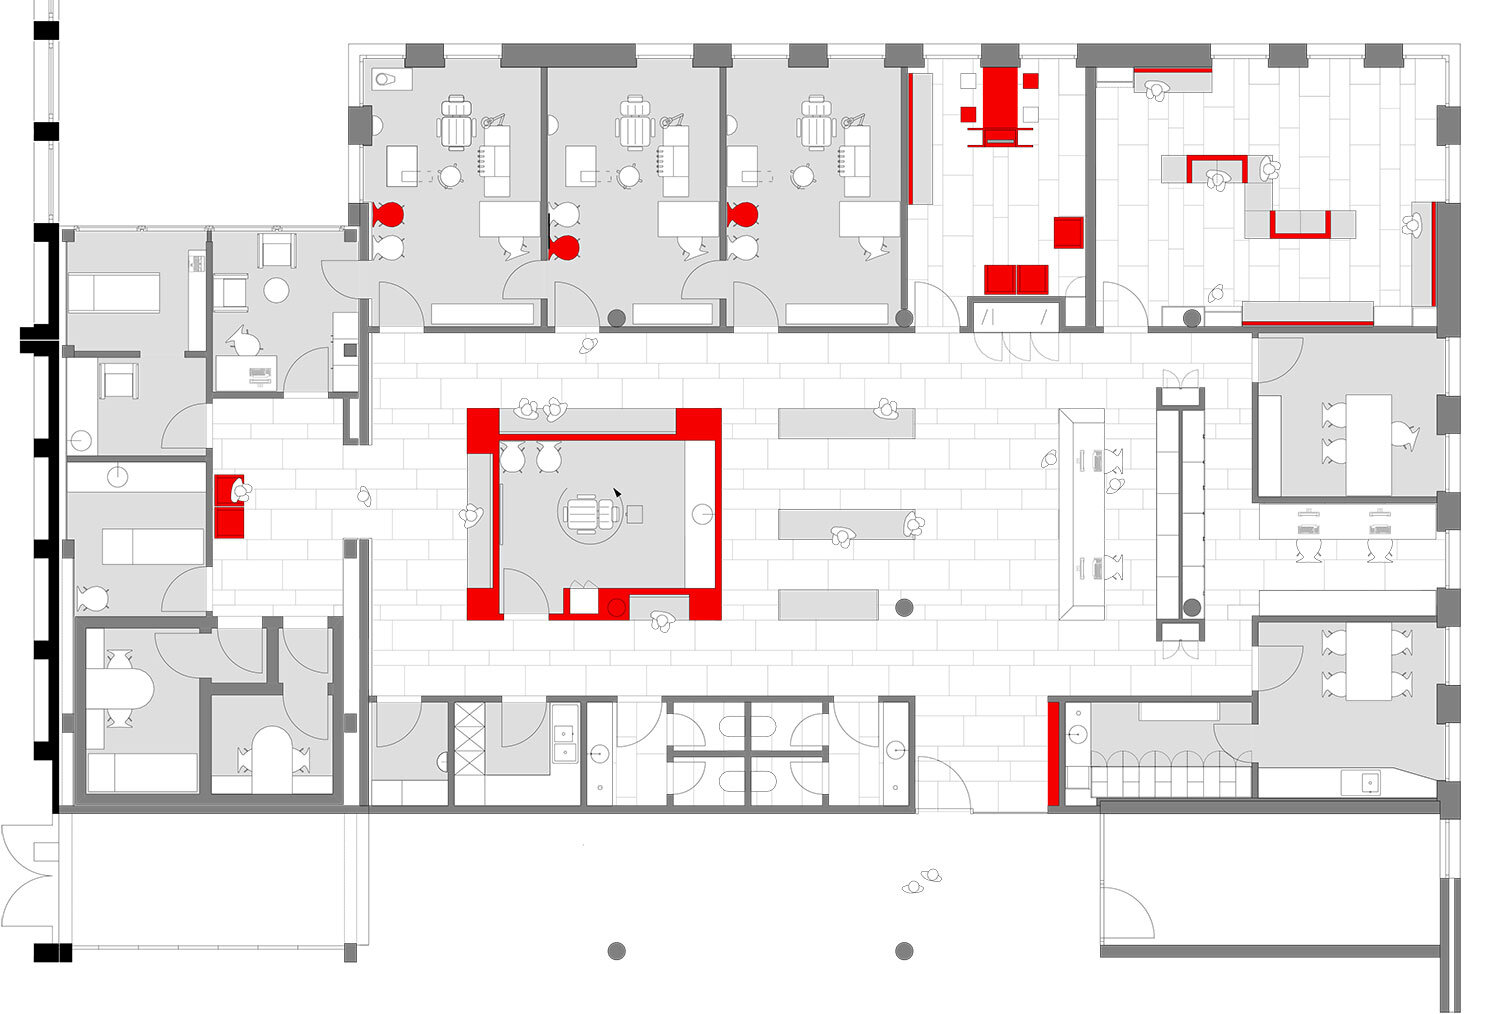 16_ht_architektur_muensterland_praxis_gesundheit_modern_innenarchitektur_freiraum_grundriss.jpg